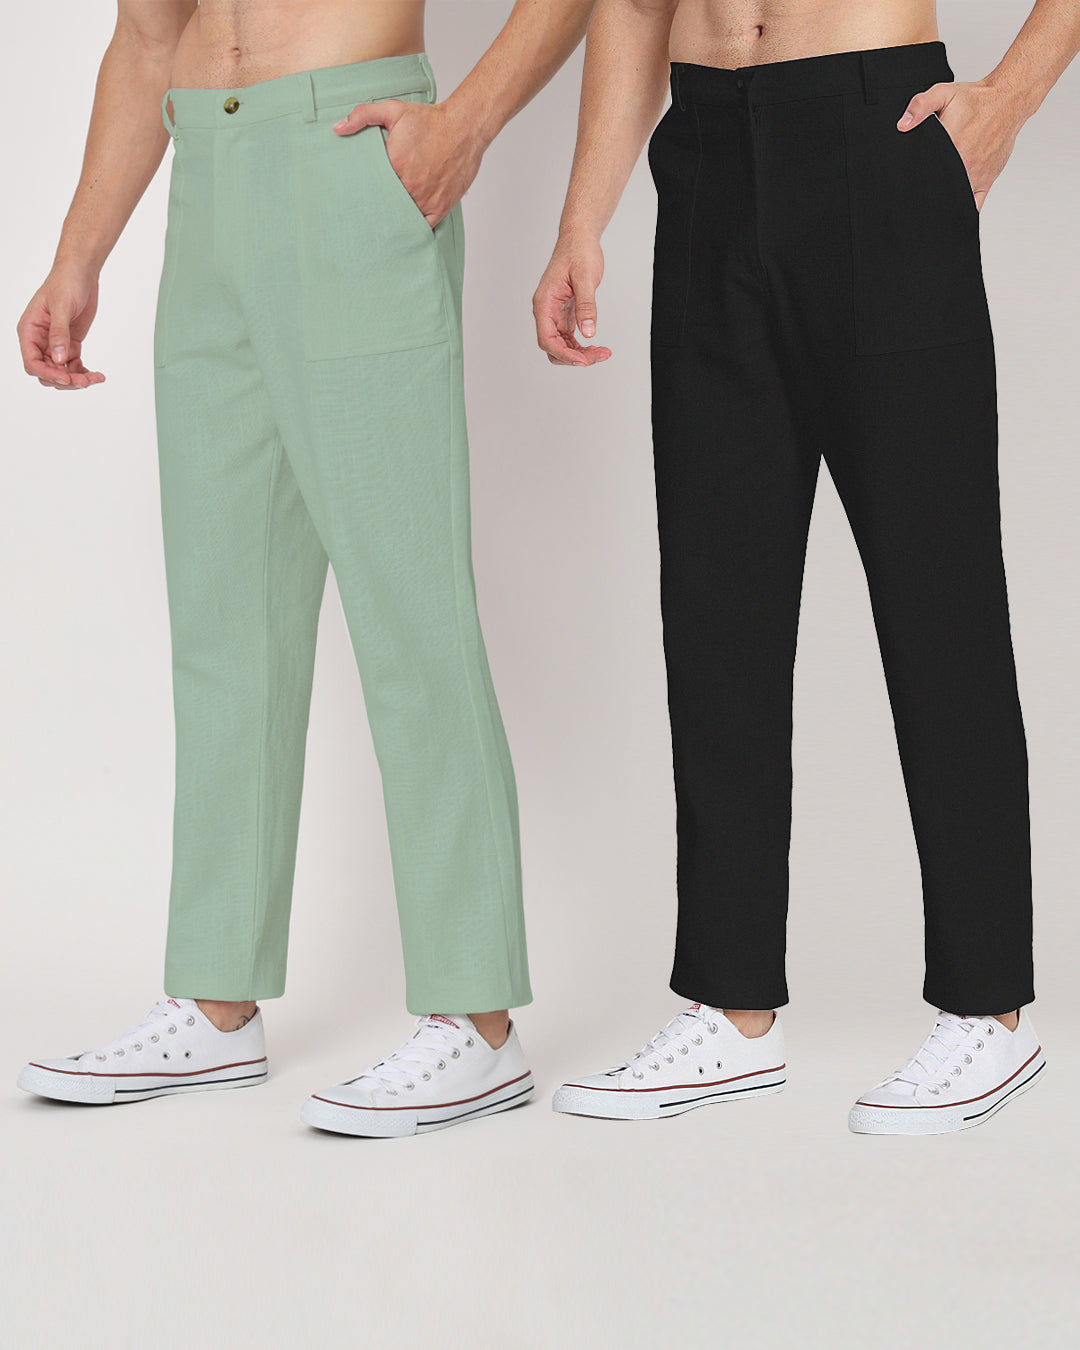 Combo : Comfy Ease Spring Green & Black Men's Pants - Set of 2